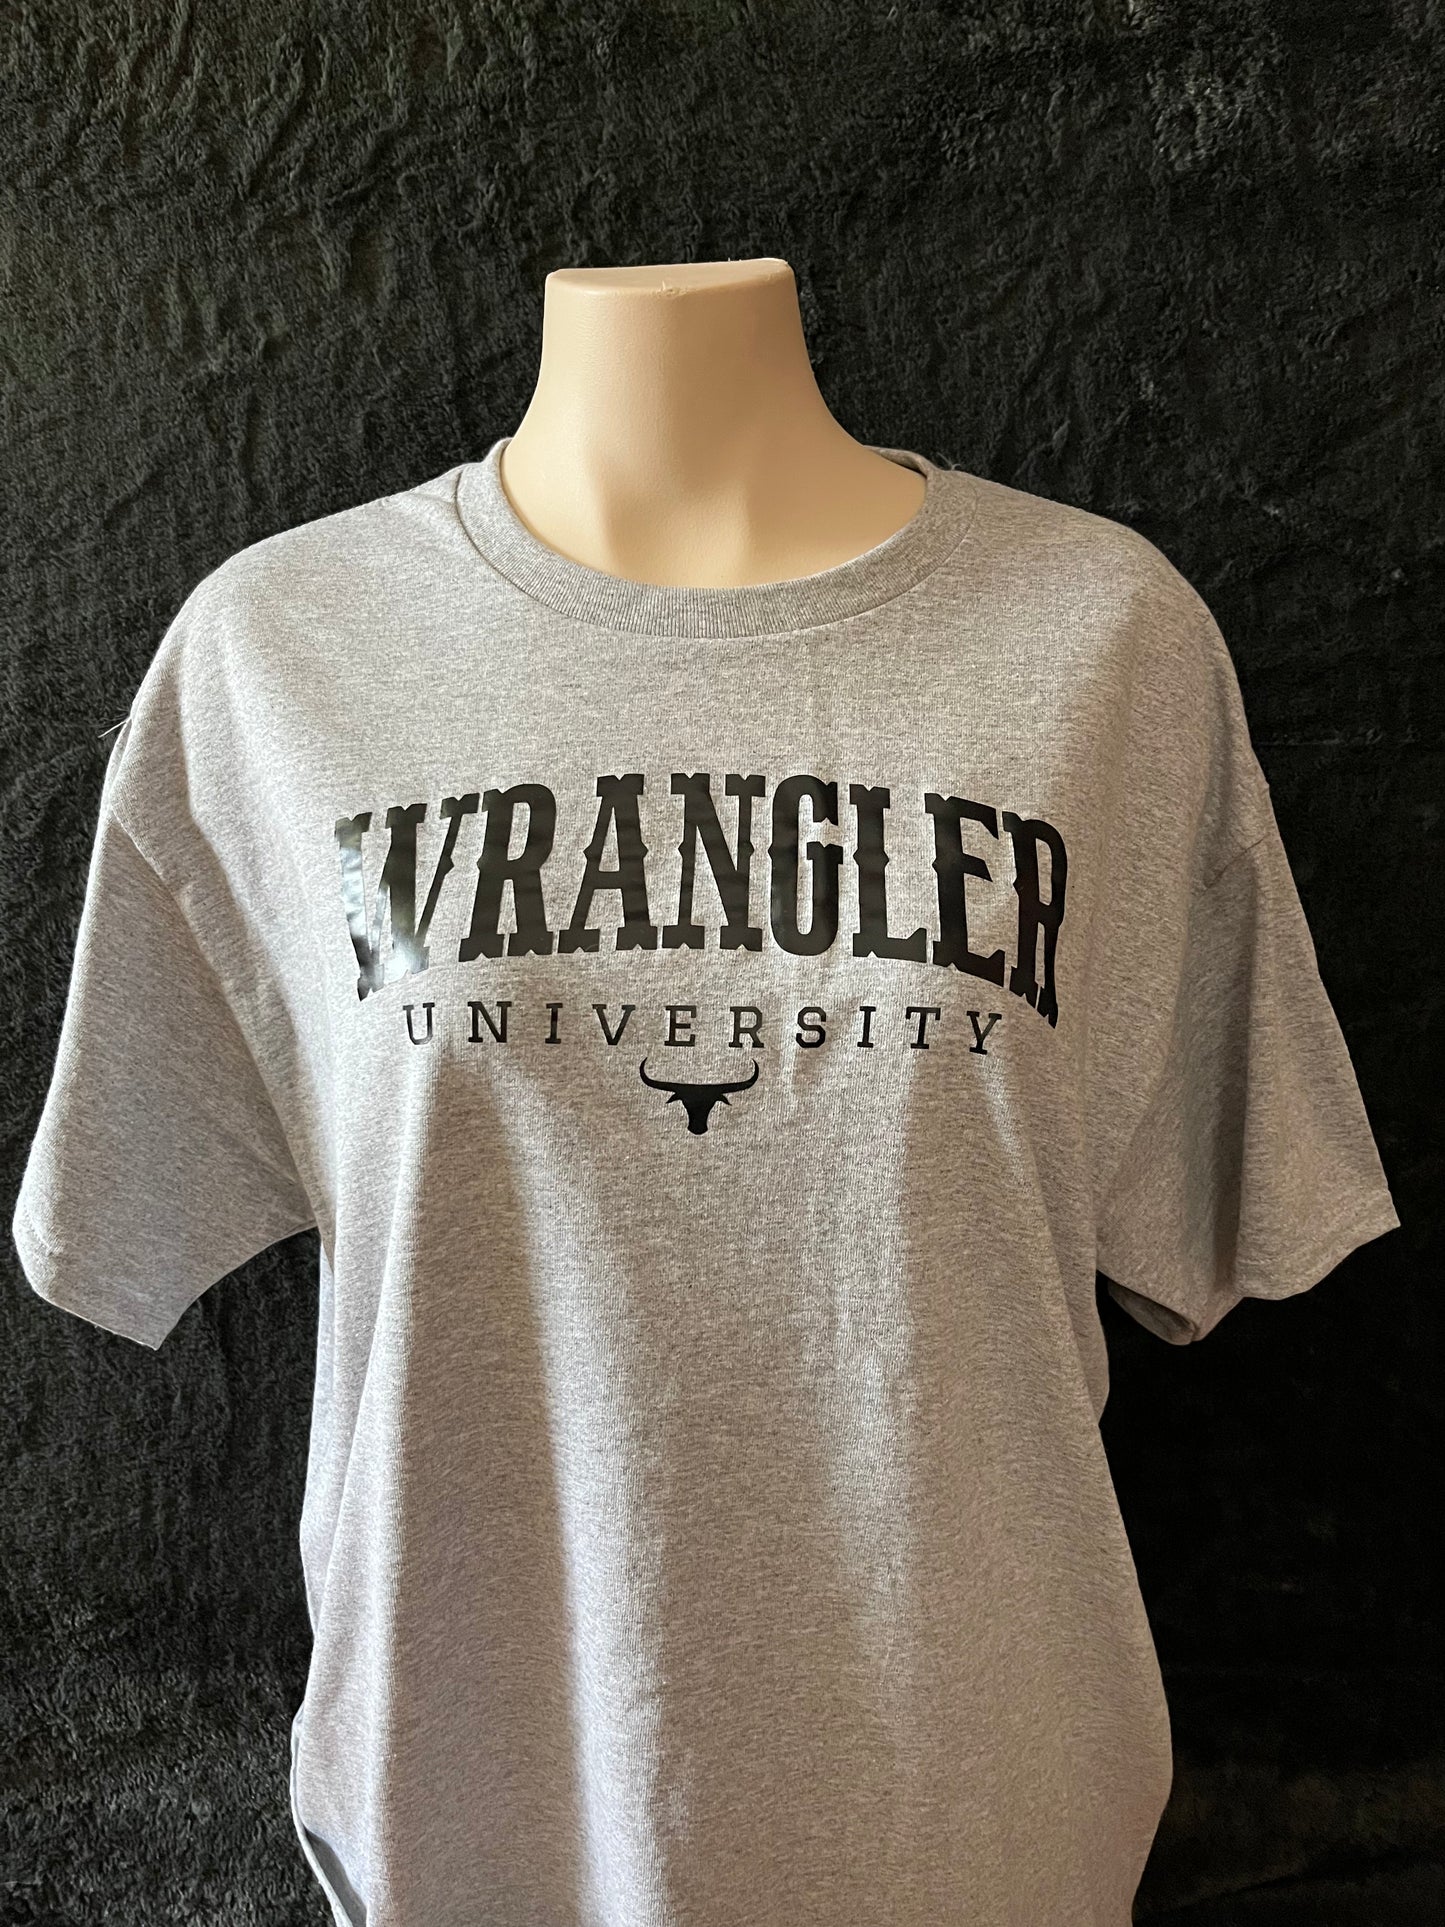 Wrangler University Unisex T-shirt